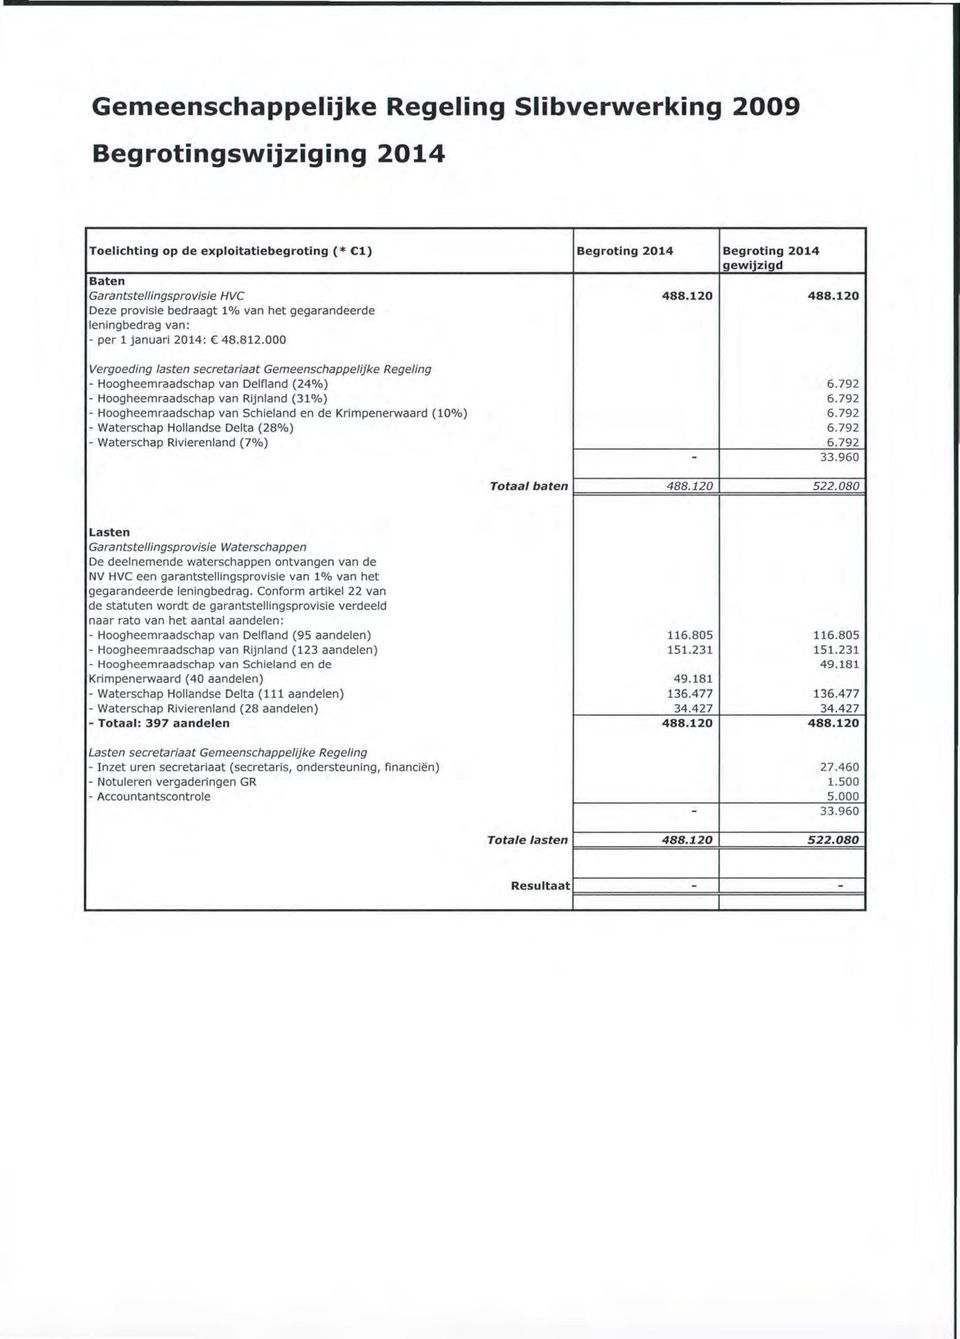 000 Vergoeding lasten secretariaat Gemeenschappelijke Regeling - Hoogheemraadschap van Delfland (24 0 7o) 6.792 - Hoogheemraadschap van Rijnland (31 0 7o) 6.